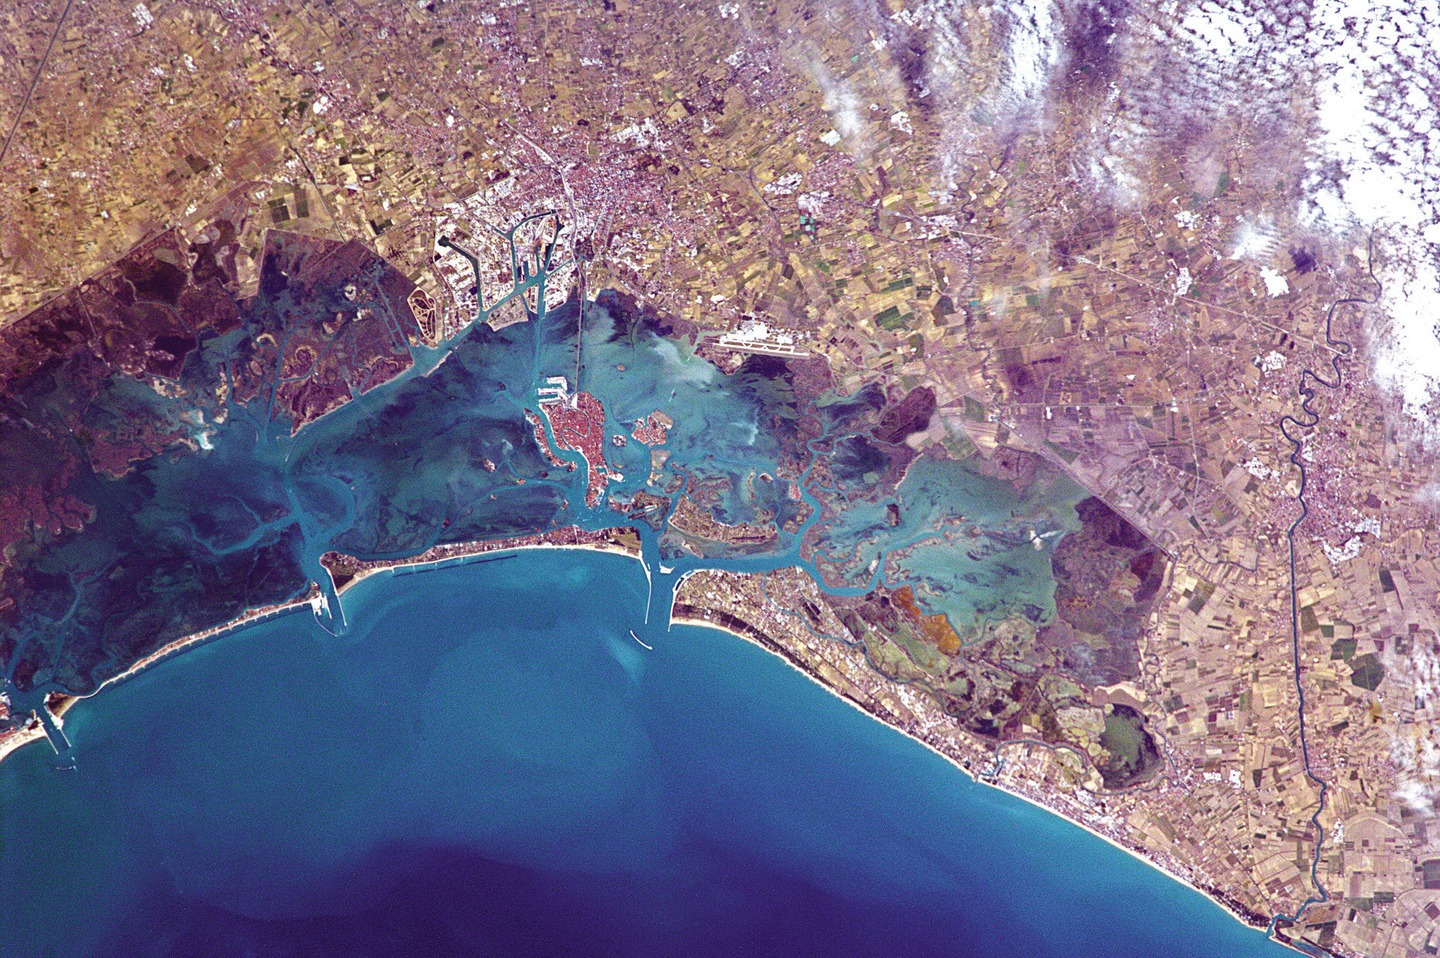 Venise et sa lagune